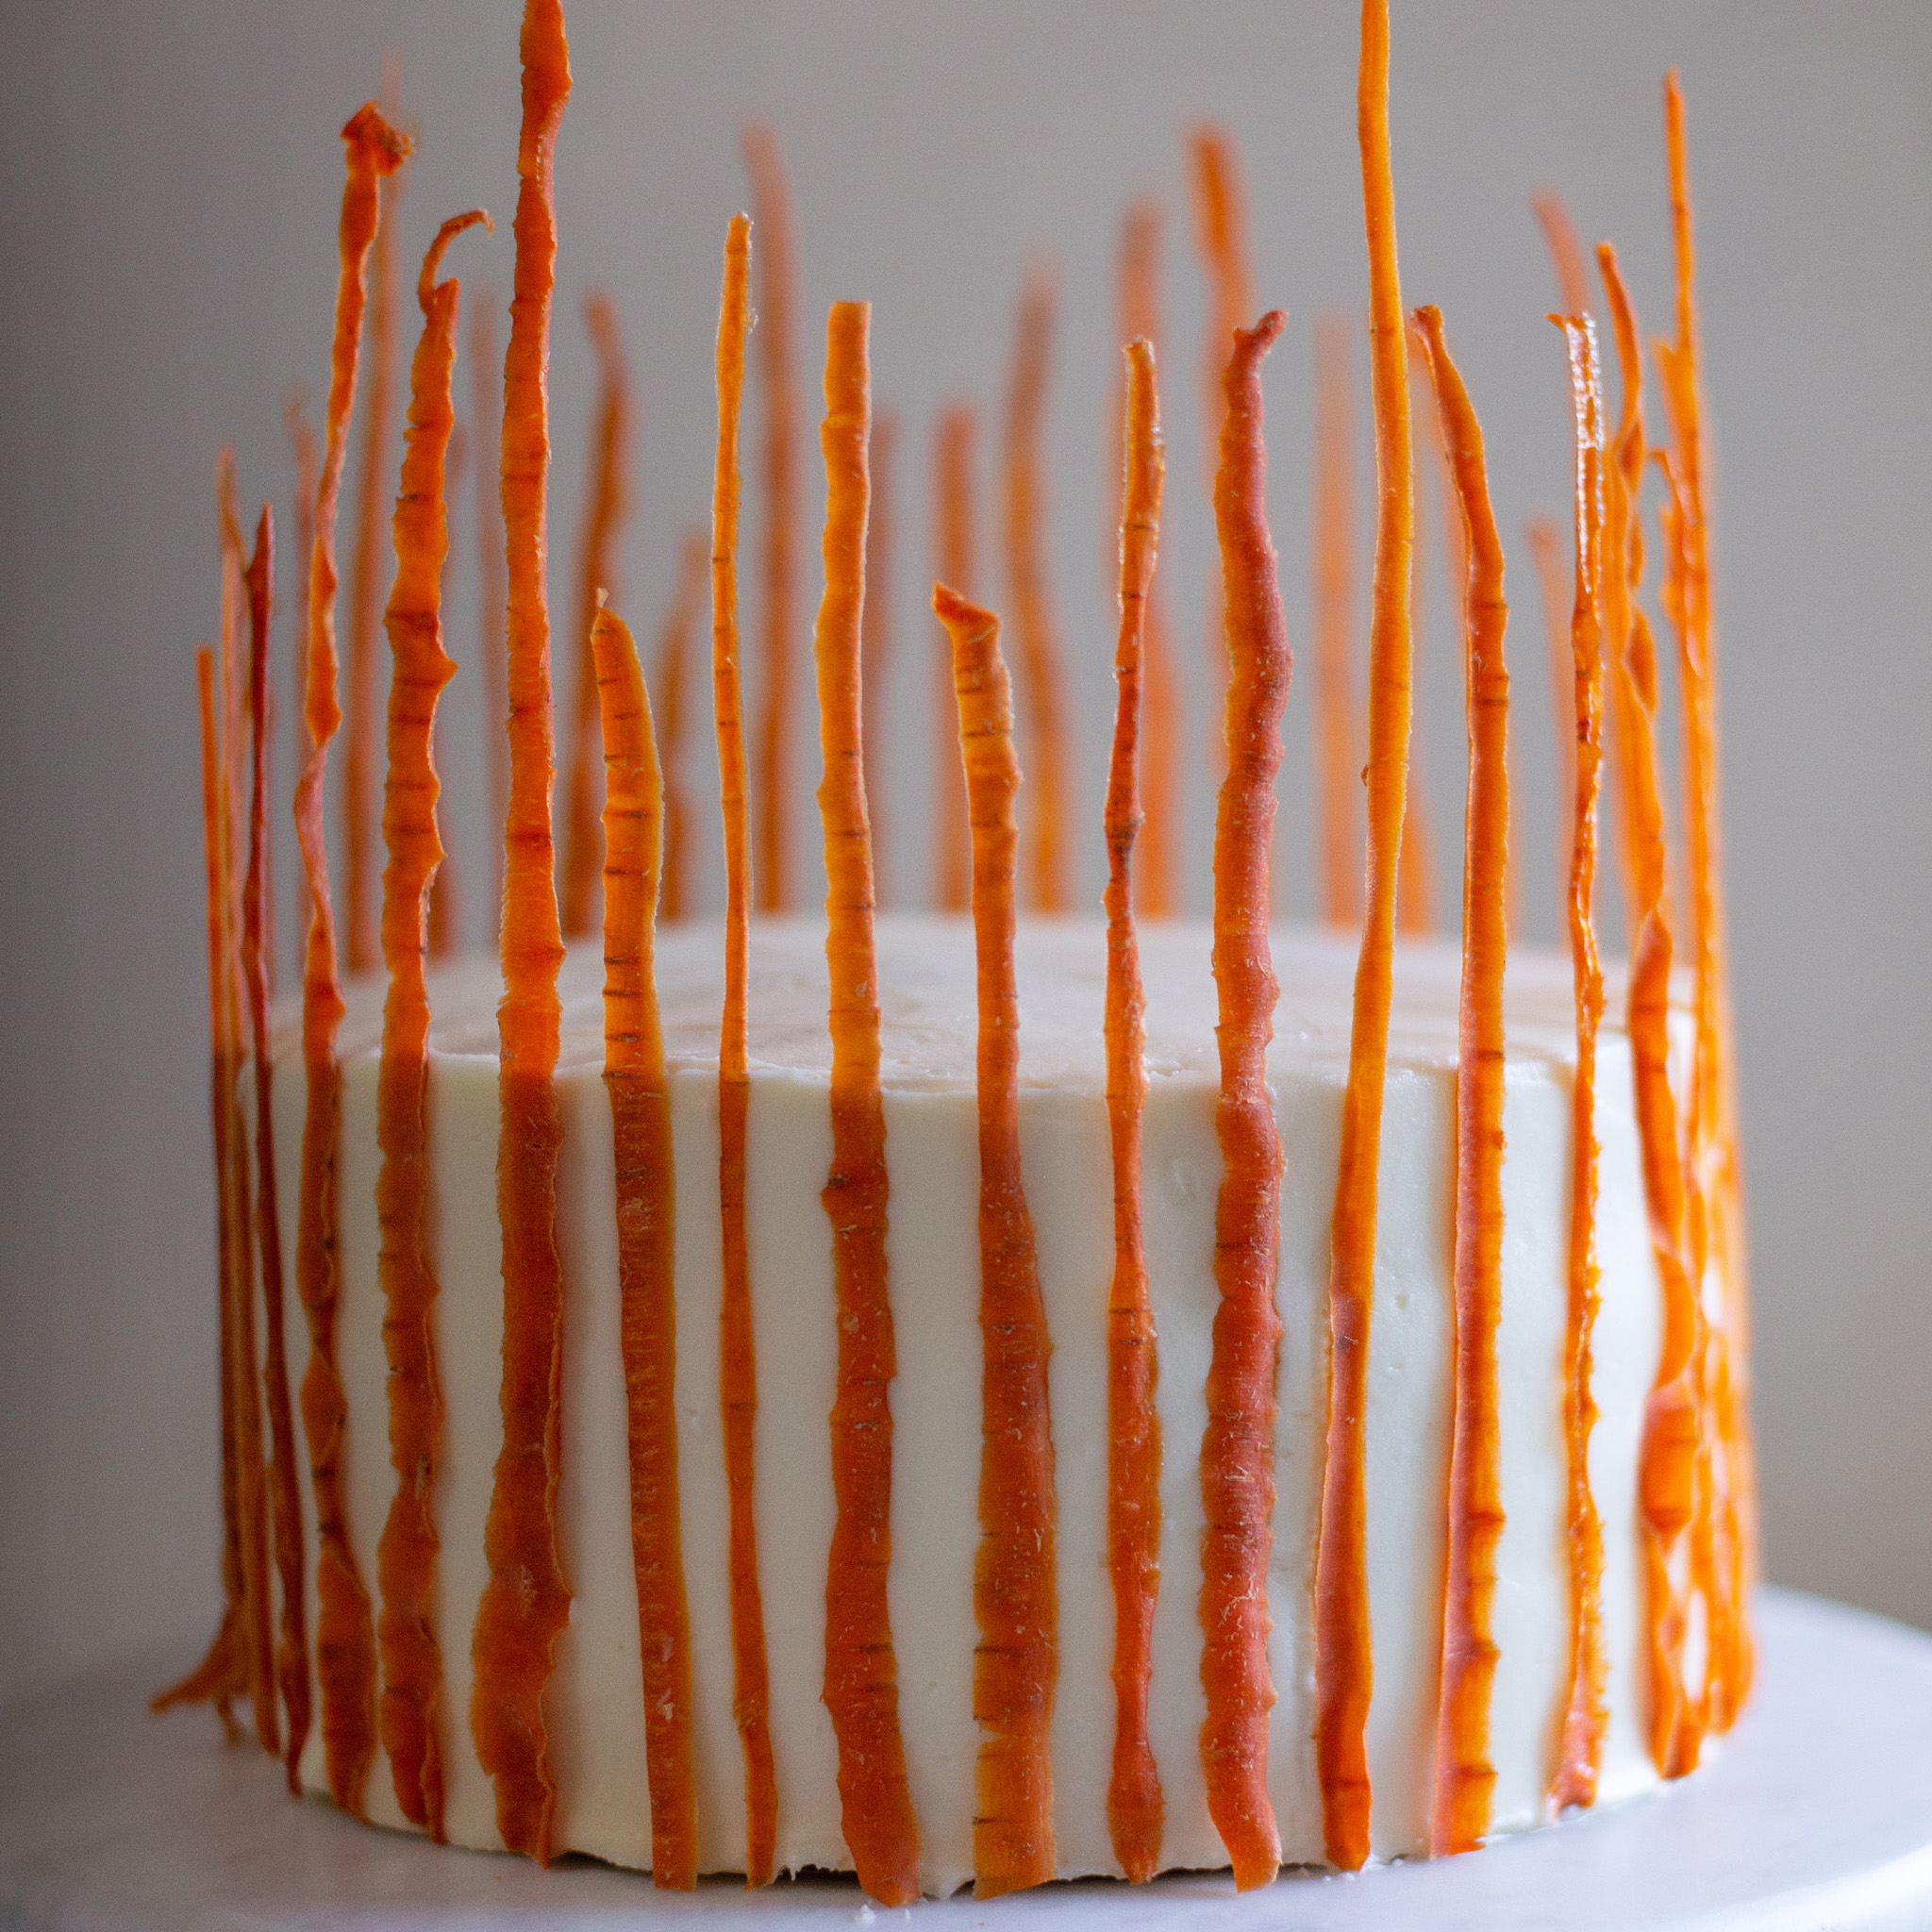 Zoe Francois' Ultimate Carrot Cake